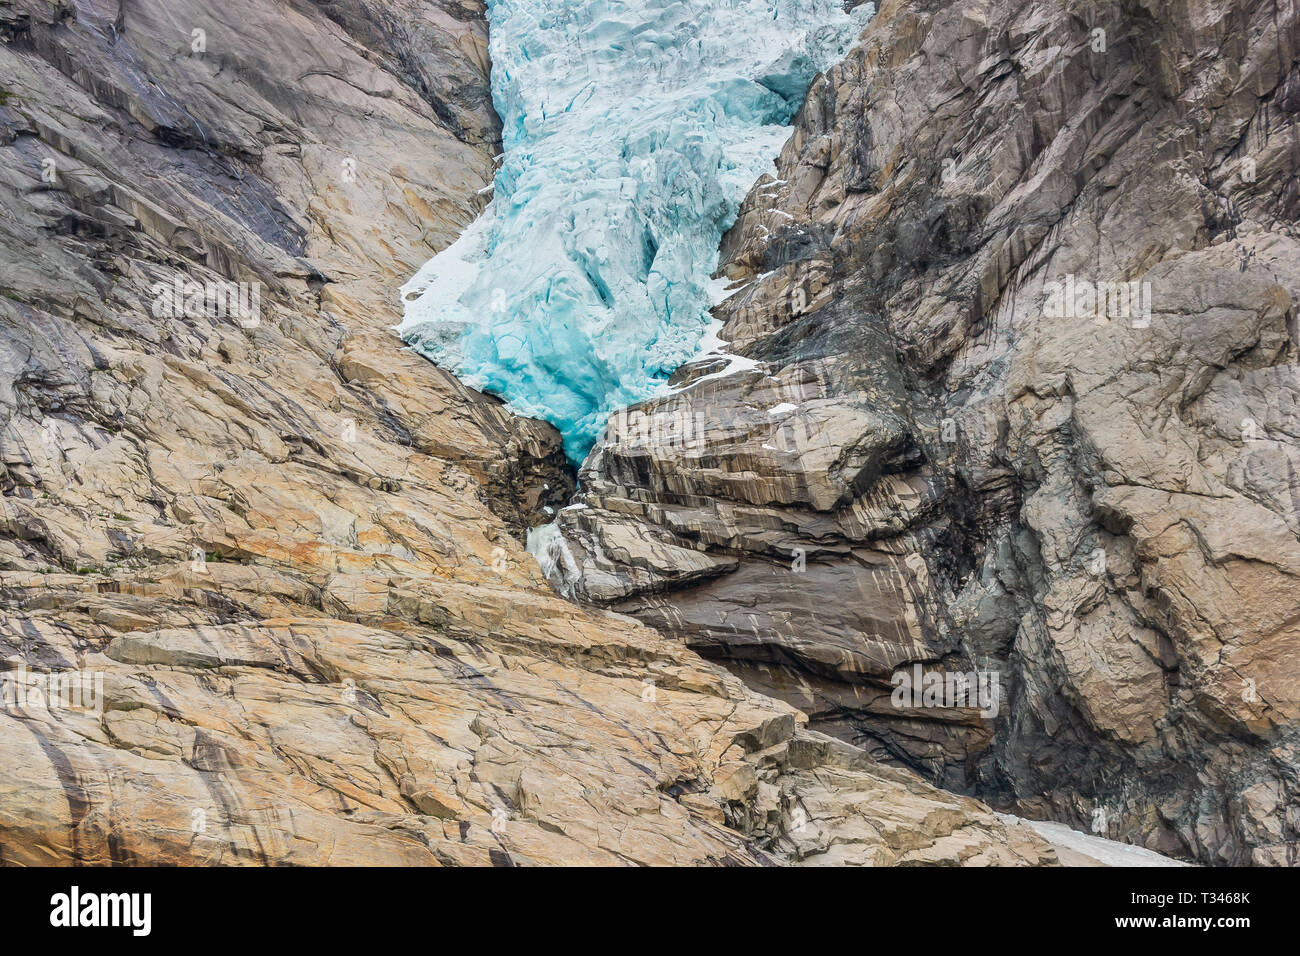 Briksdal Gletscher Briksdalsbreen oder mit Schmelzen Blue Ice, Norwegen Natur Sehenswürdigkeiten und den See der milchige Schmelzwasser. Norwegen Gletscher Jostedalsbreen Stockfoto